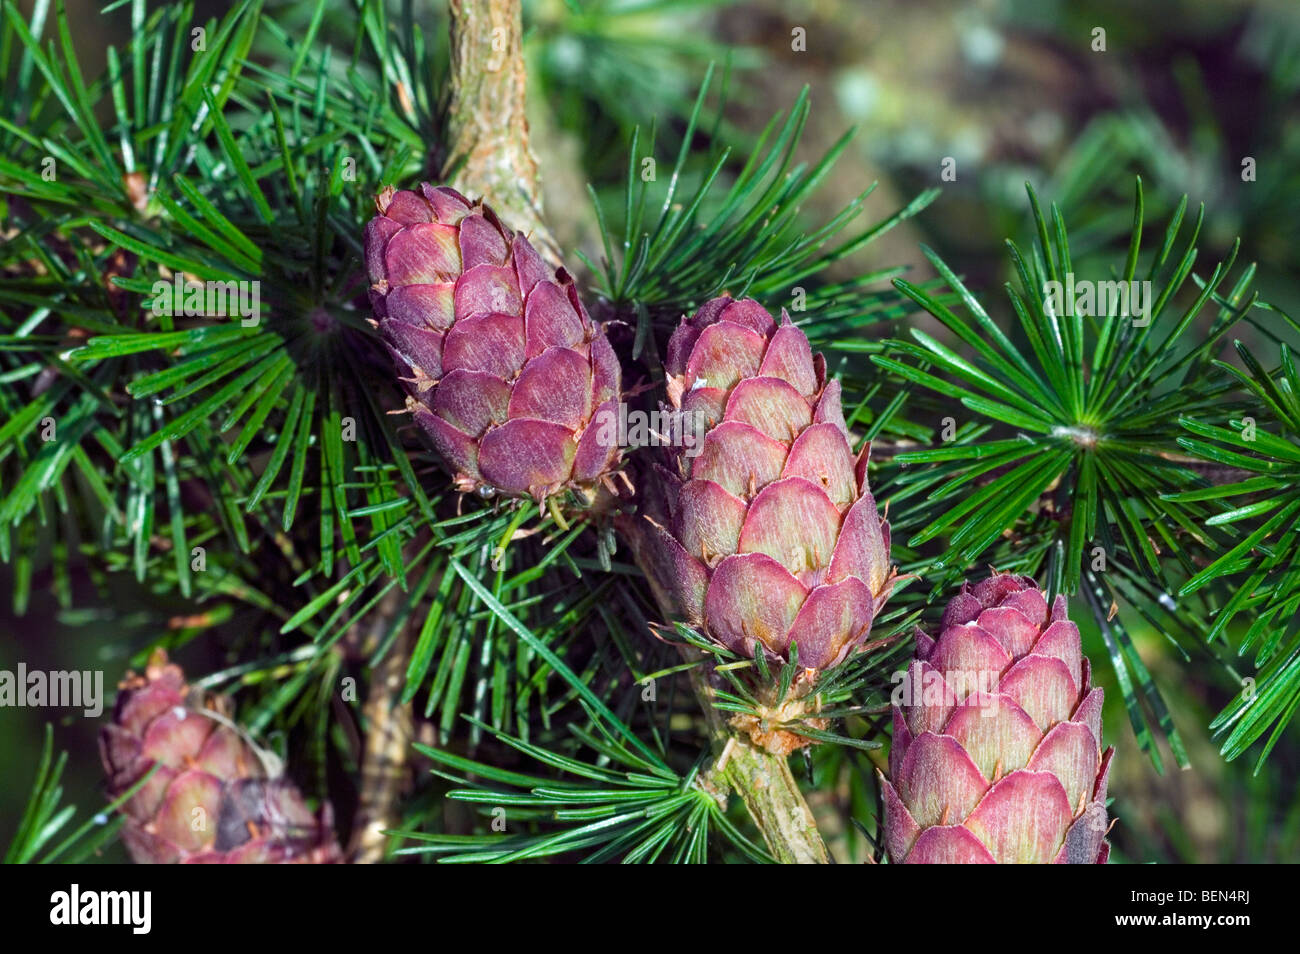 European Larch (Larix decidua) pinecones and needles, Belgium Stock Photo